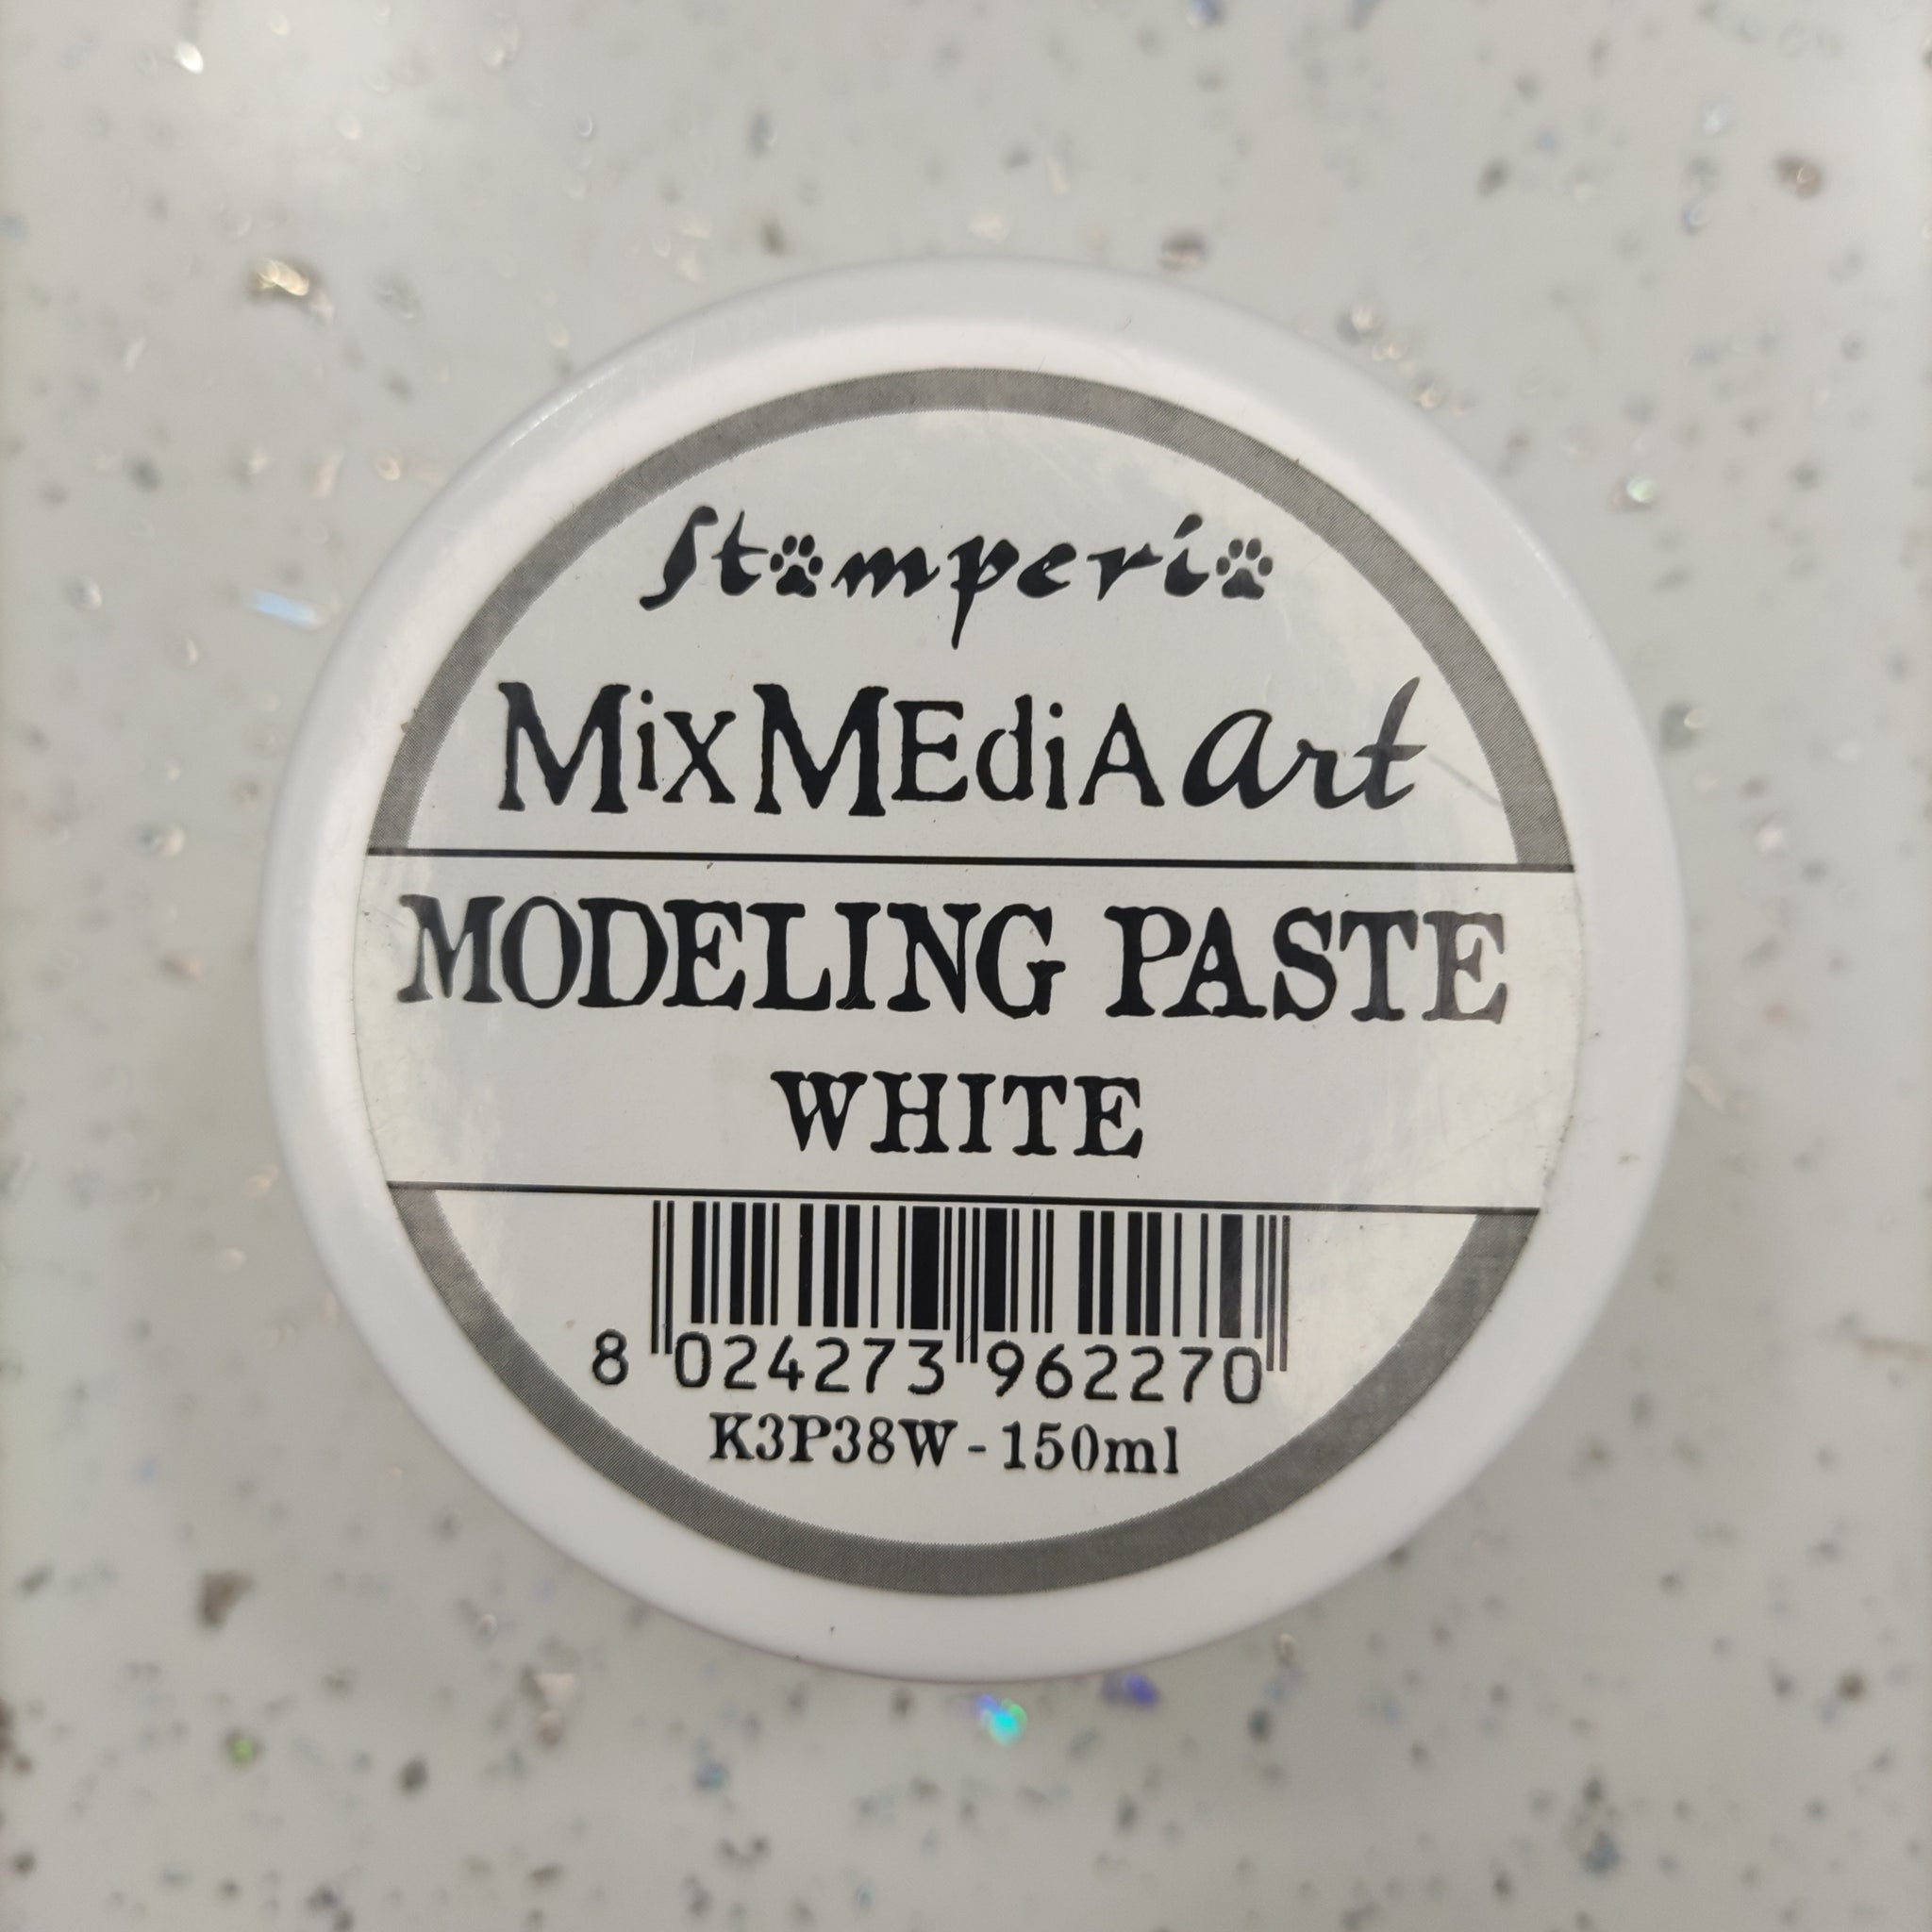 Modelling paste